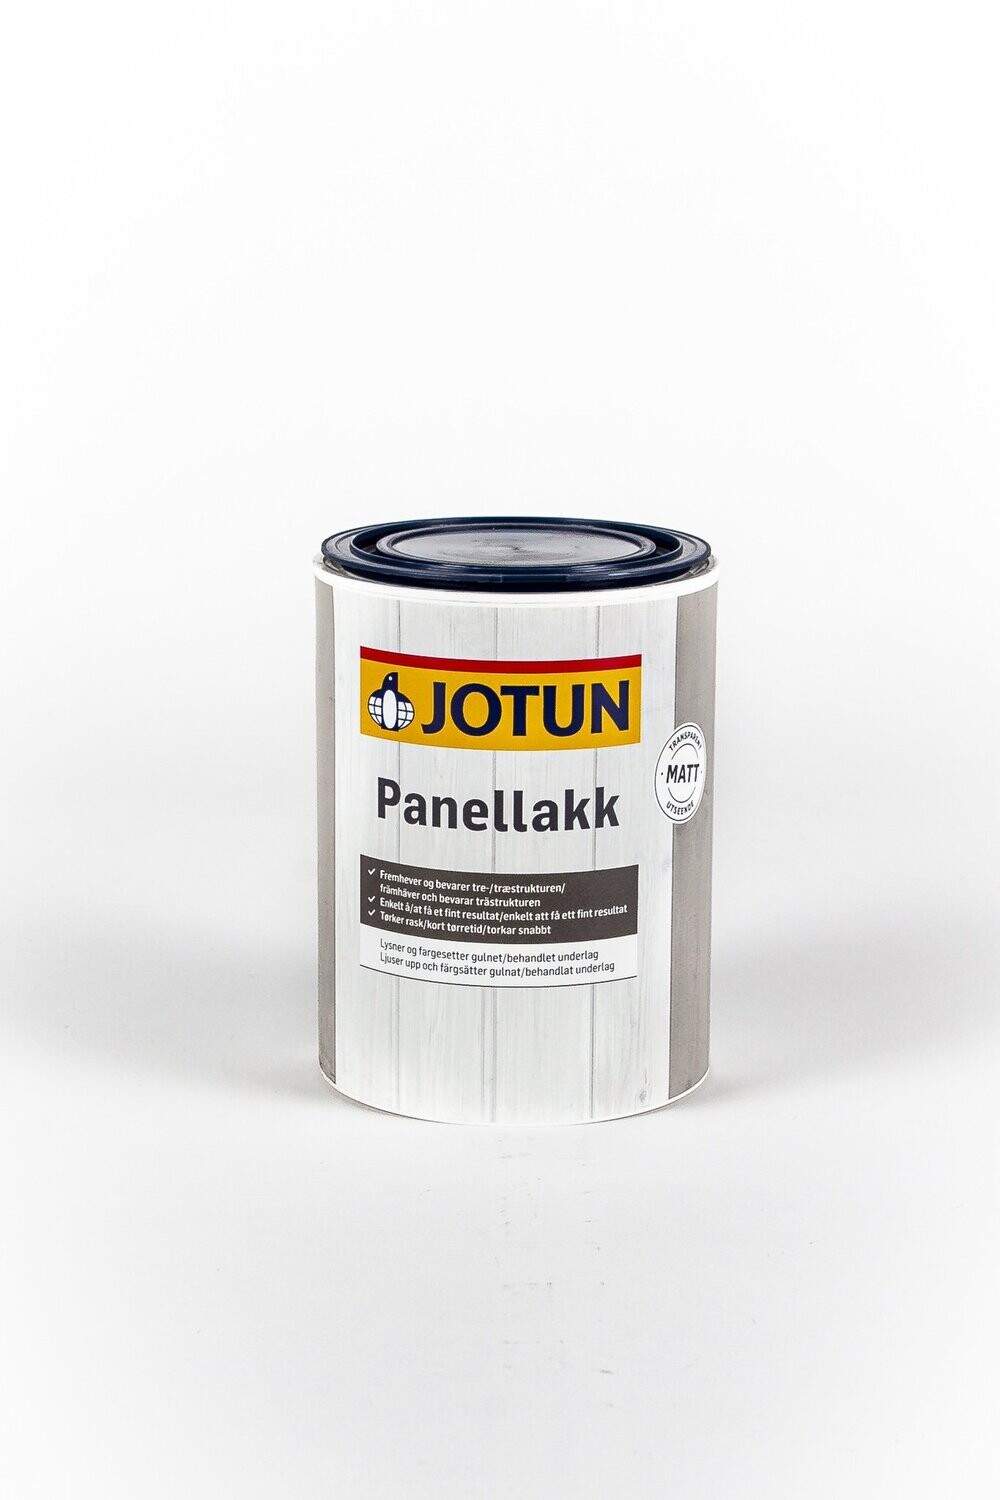 JOTUN Panellakk - seidenmatte Acryllasur für Innen - 0,75 l